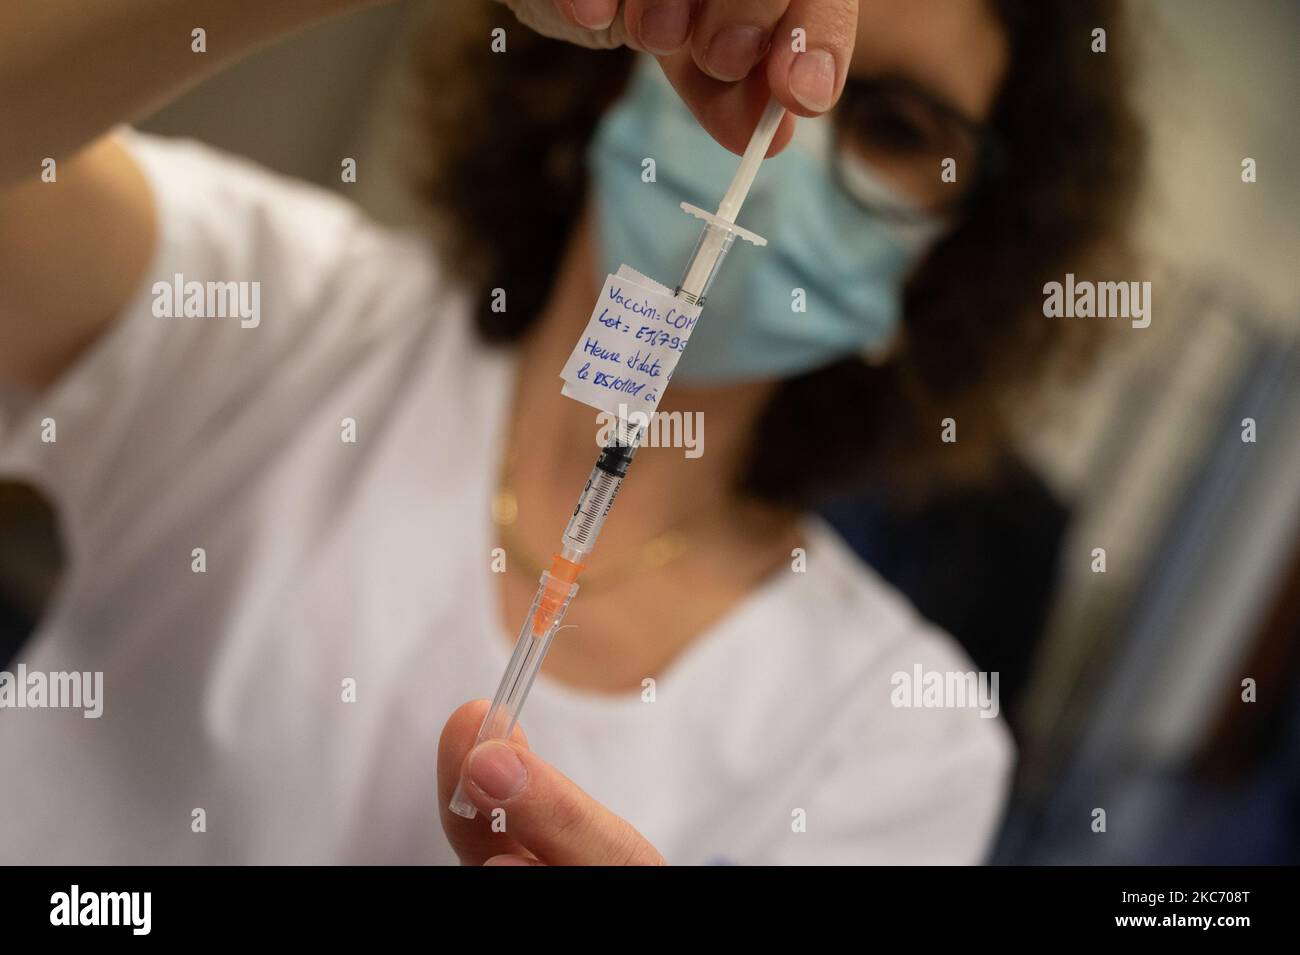 Die erste Impfphase gegen Covid 19 begann am 5. Januar 2021 in Ille-et-Vilaine, Frankreich. Die ersten Injektionen des Pfizer-BioNTech Boten-RNA-Impfstoffs fanden 5 in Ephad in der Abteilung statt. (Foto: Estelle Ruiz/NurPhoto) Stockfoto